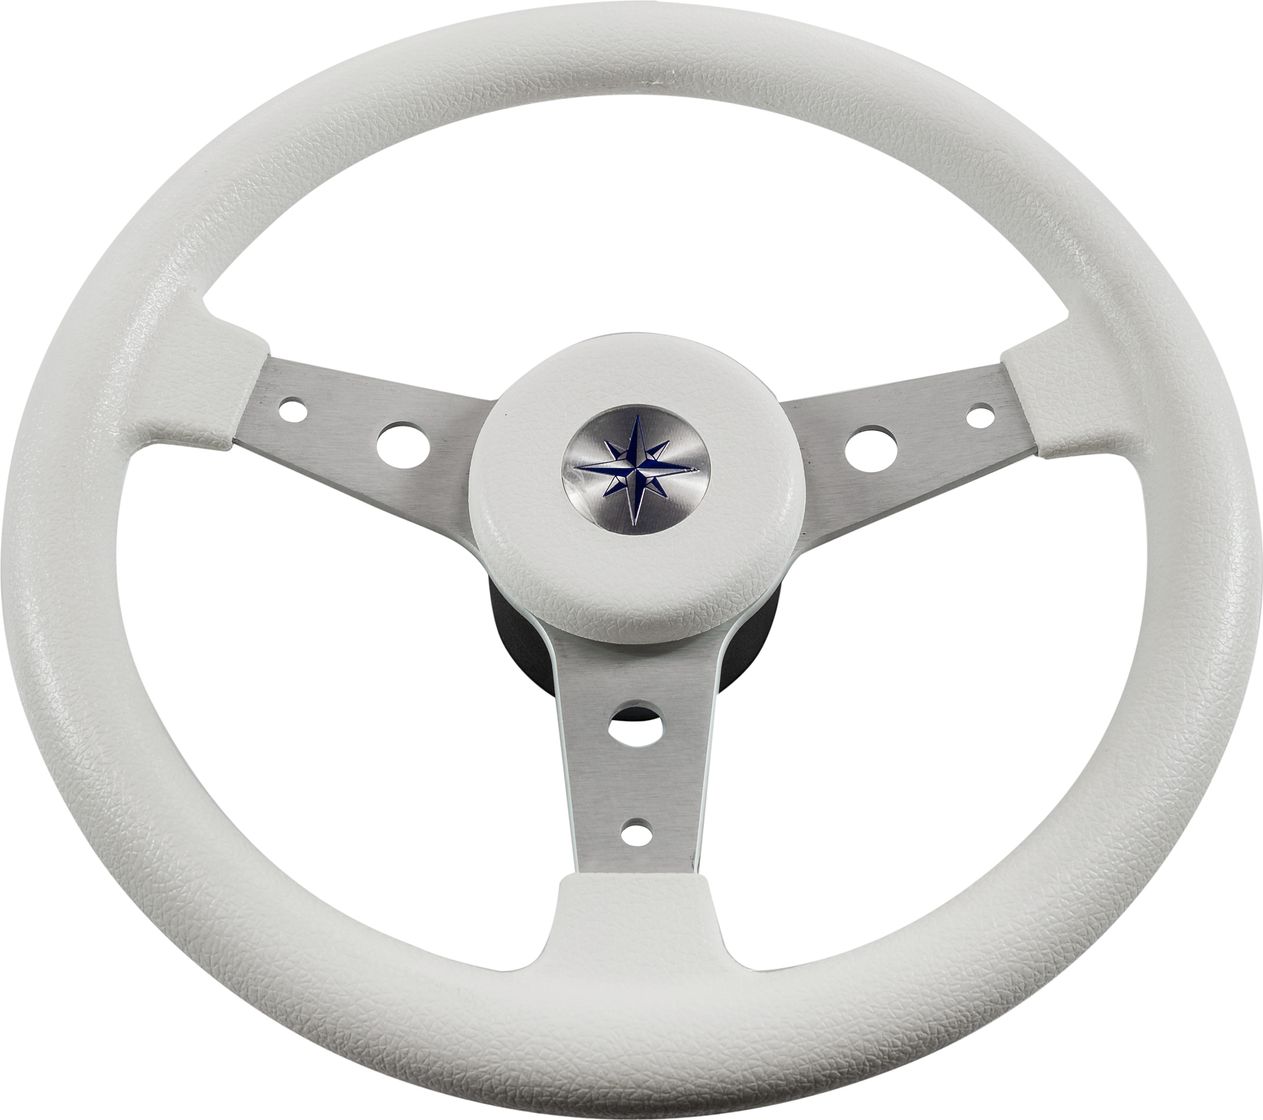 Рулевое колесо DELFINO обод белый,спицы серебряные д. 340 мм VN70401-08 рулевое колесо riviera белый обод и спицы д 350 мм vn8001 08